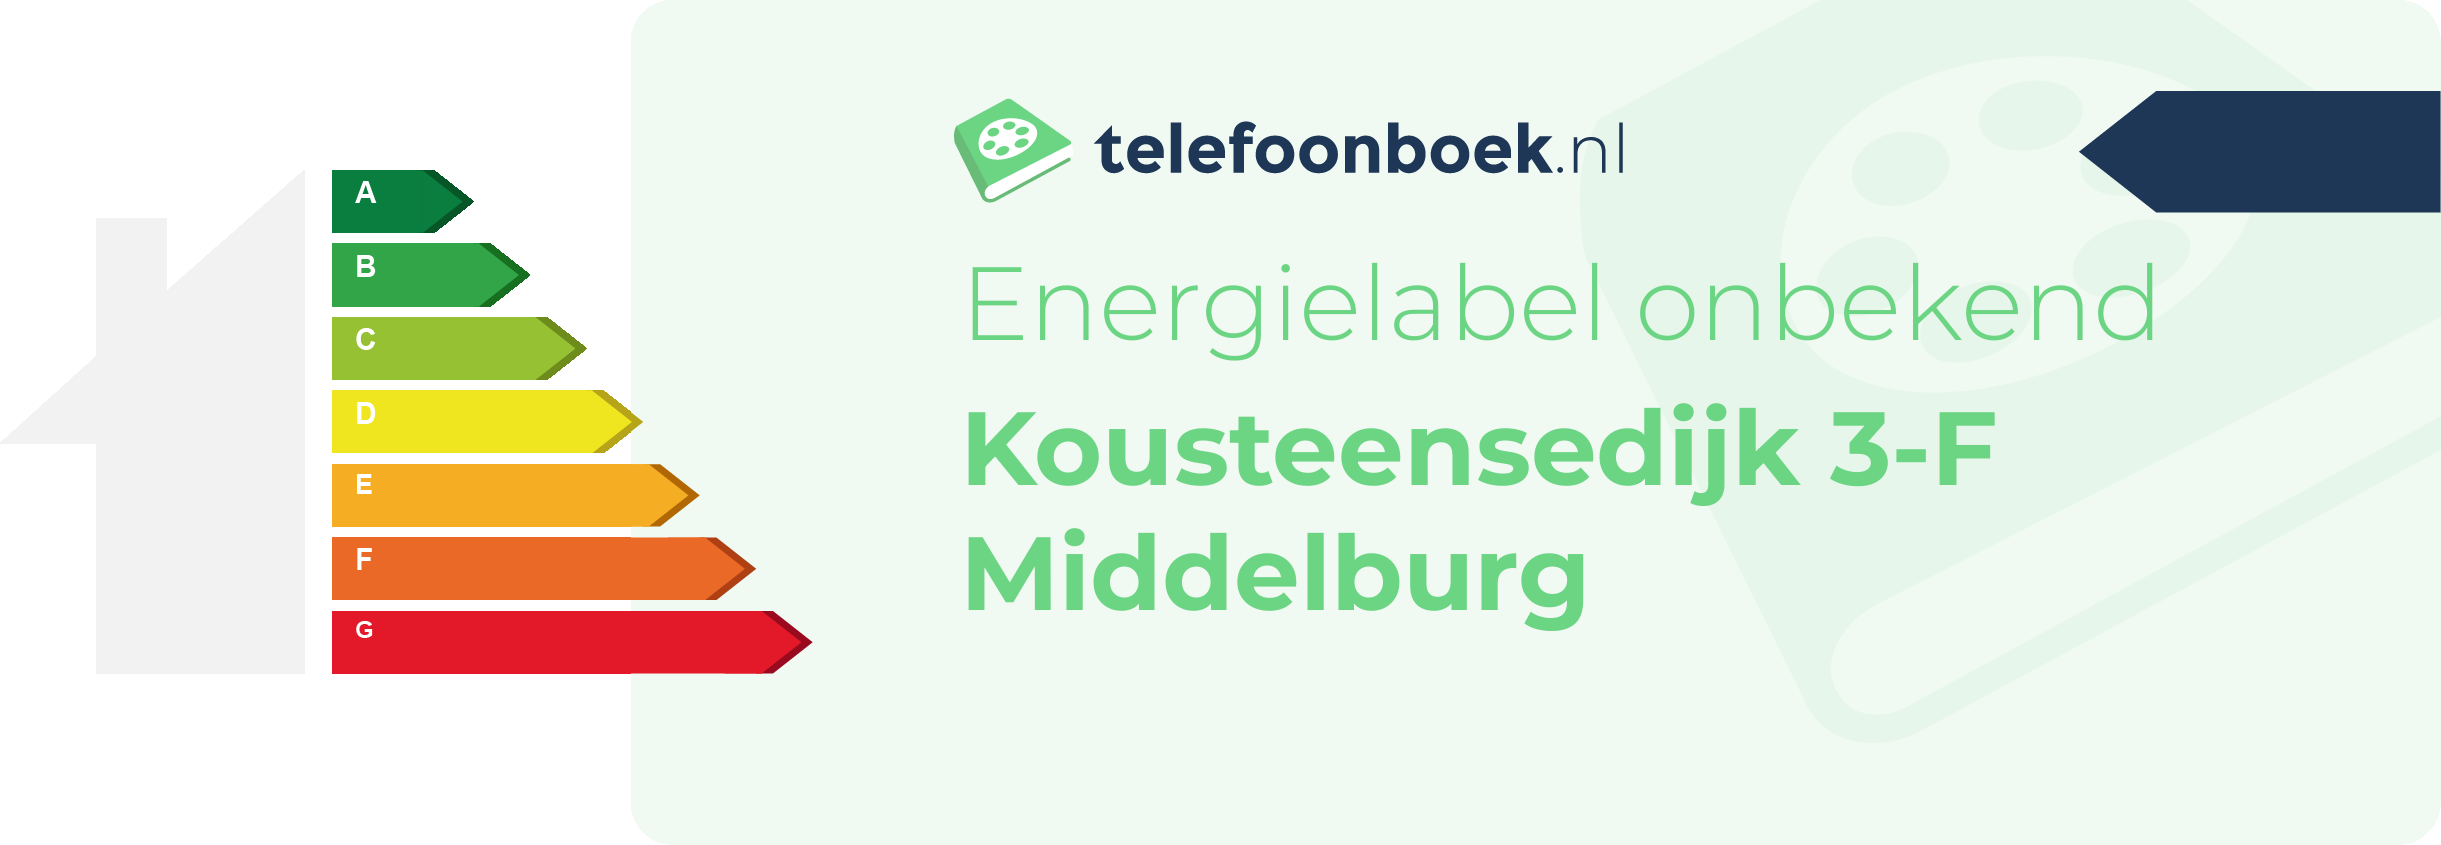 Energielabel Kousteensedijk 3-F Middelburg